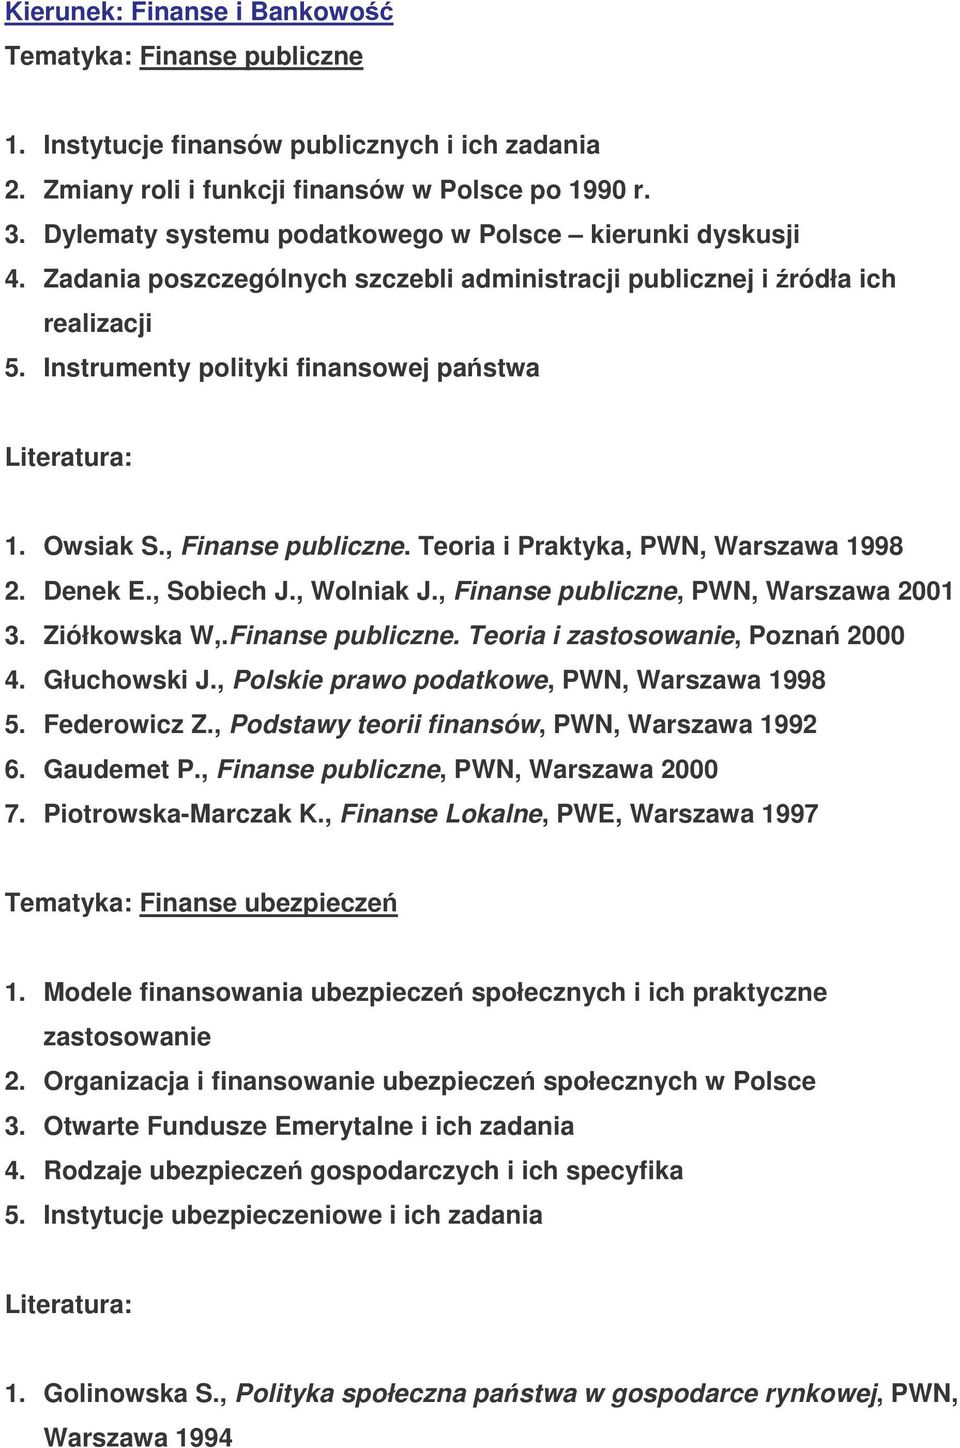 Owsiak S., Finanse publiczne. Teoria i Praktyka, PWN, Warszawa 1998 2. Denek E., Sobiech J., Wolniak J., Finanse publiczne, PWN, Warszawa 2001 3. Ziółkowska W,.Finanse publiczne. Teoria i zastosowanie, Pozna 2000 4.